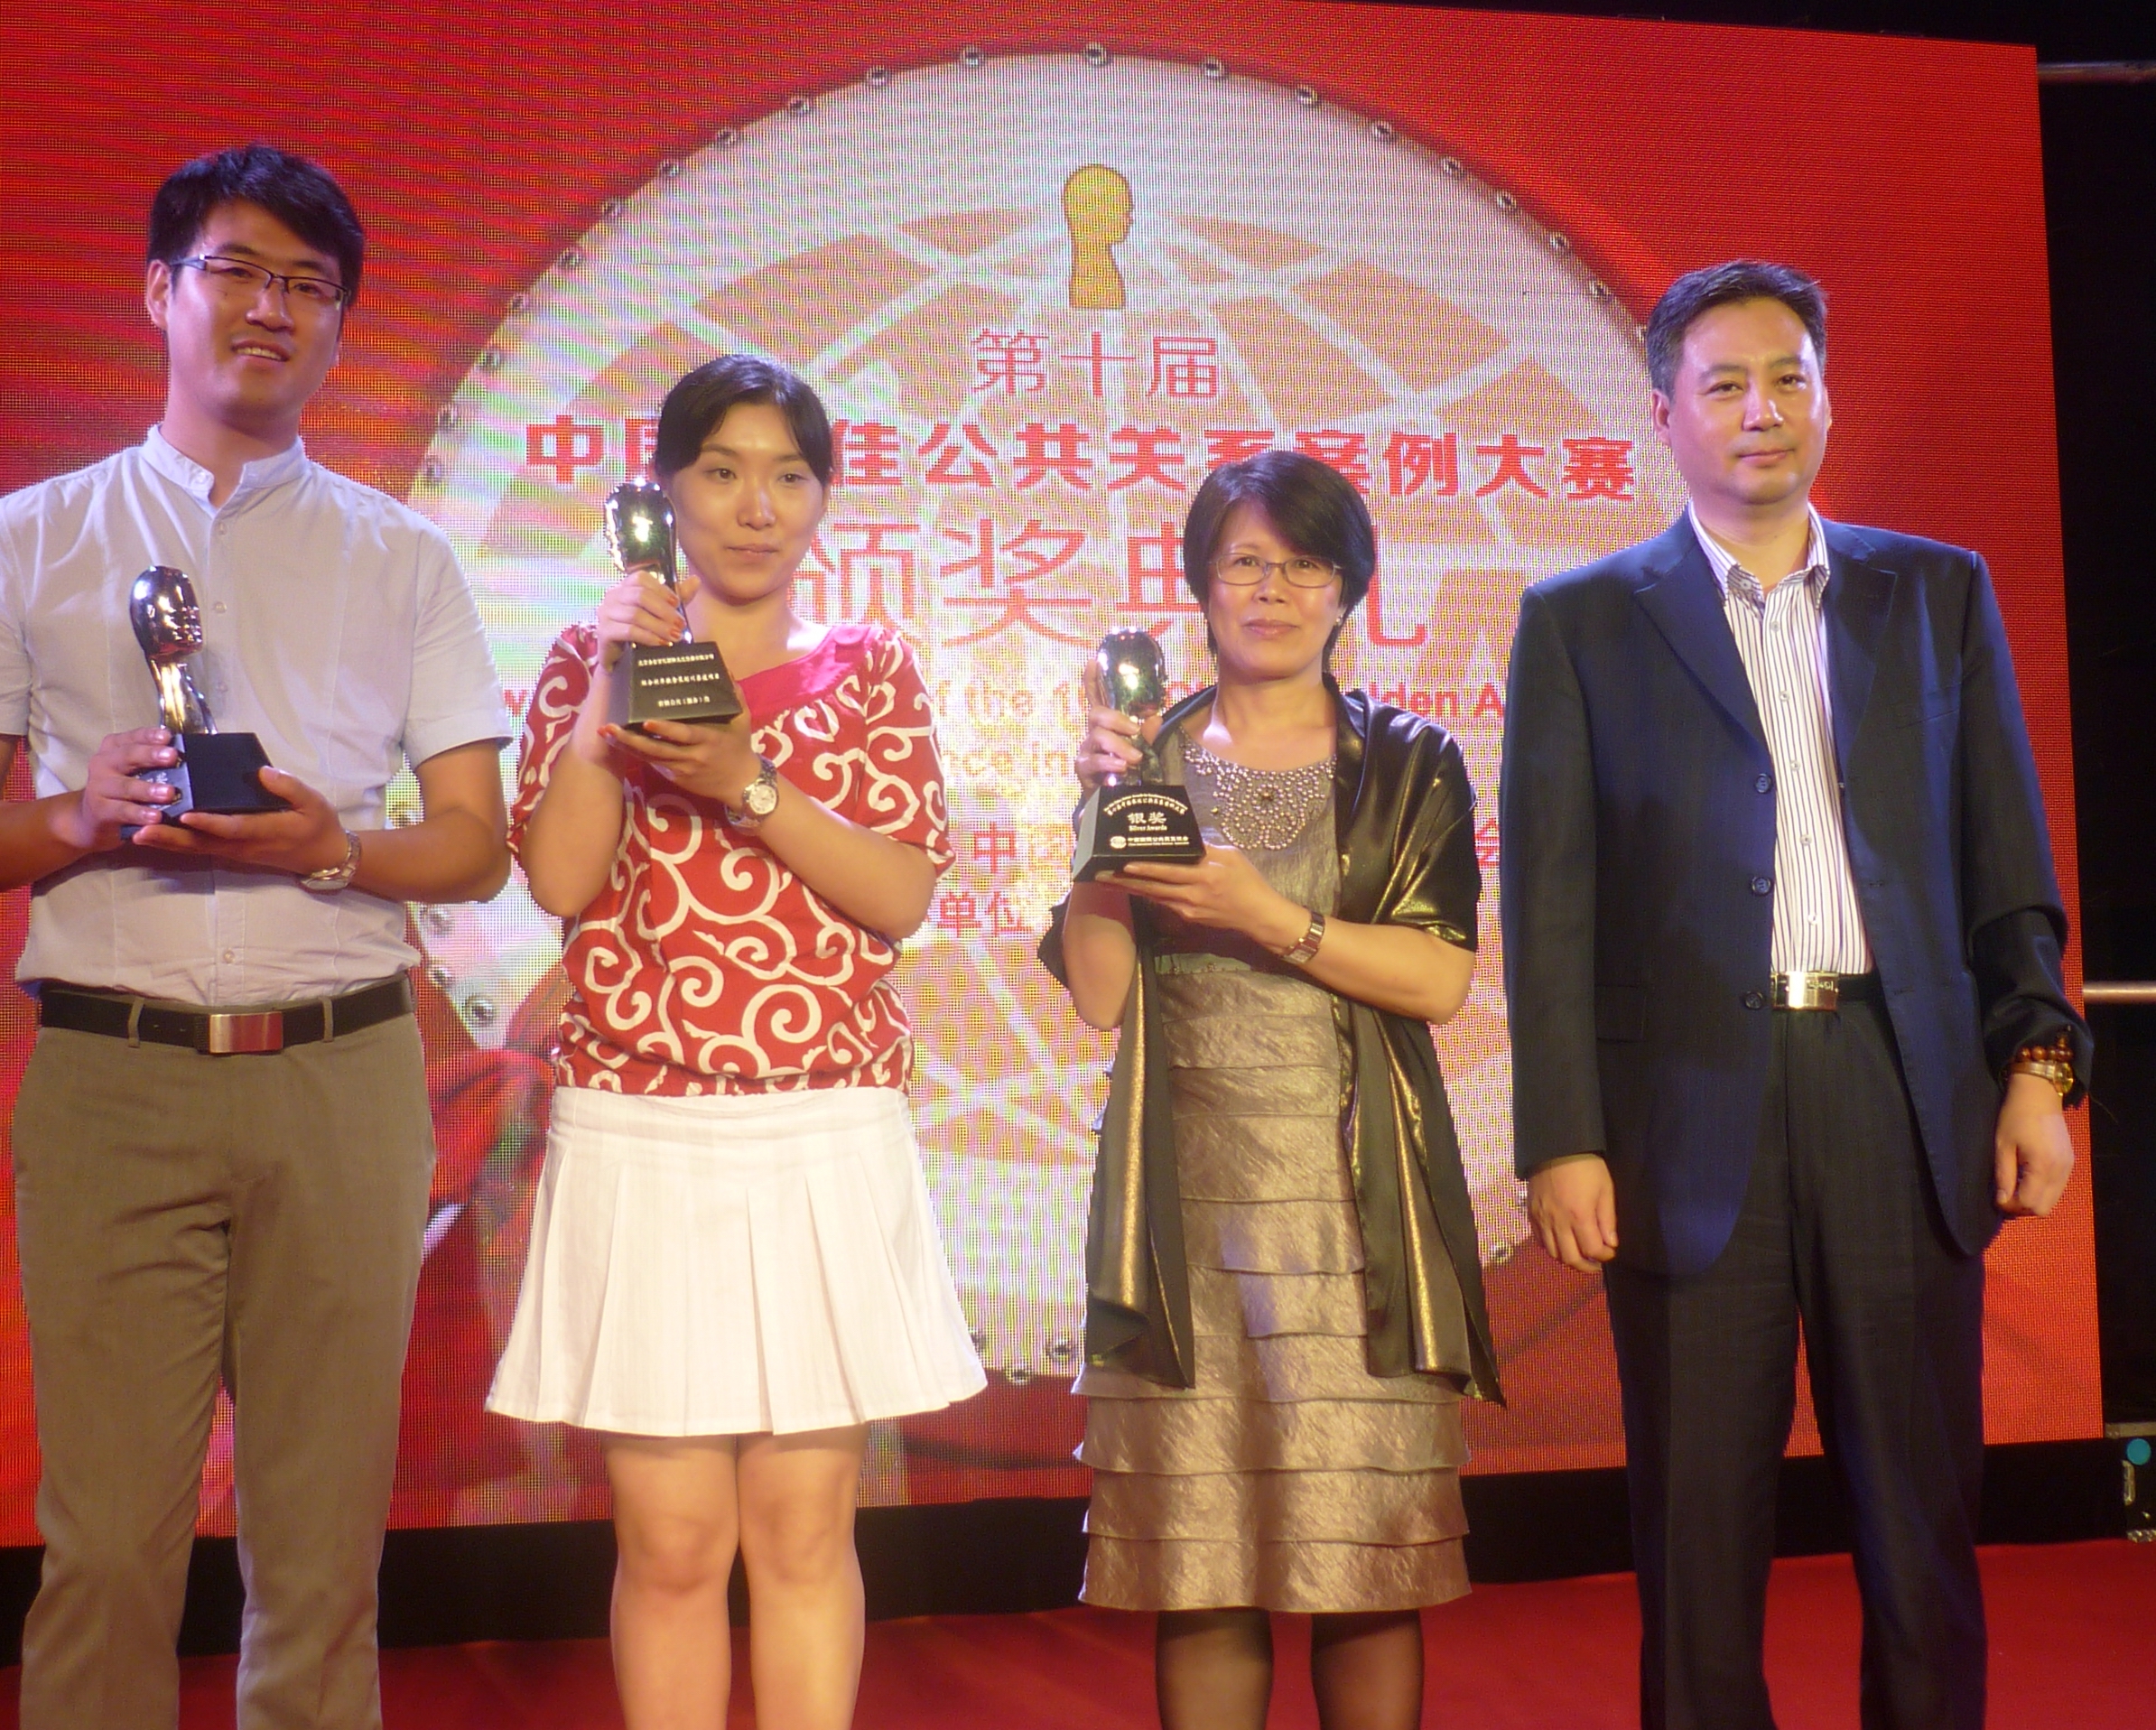 新创建集团员工沟通策略获中国国际公共关系协会颁发银奖